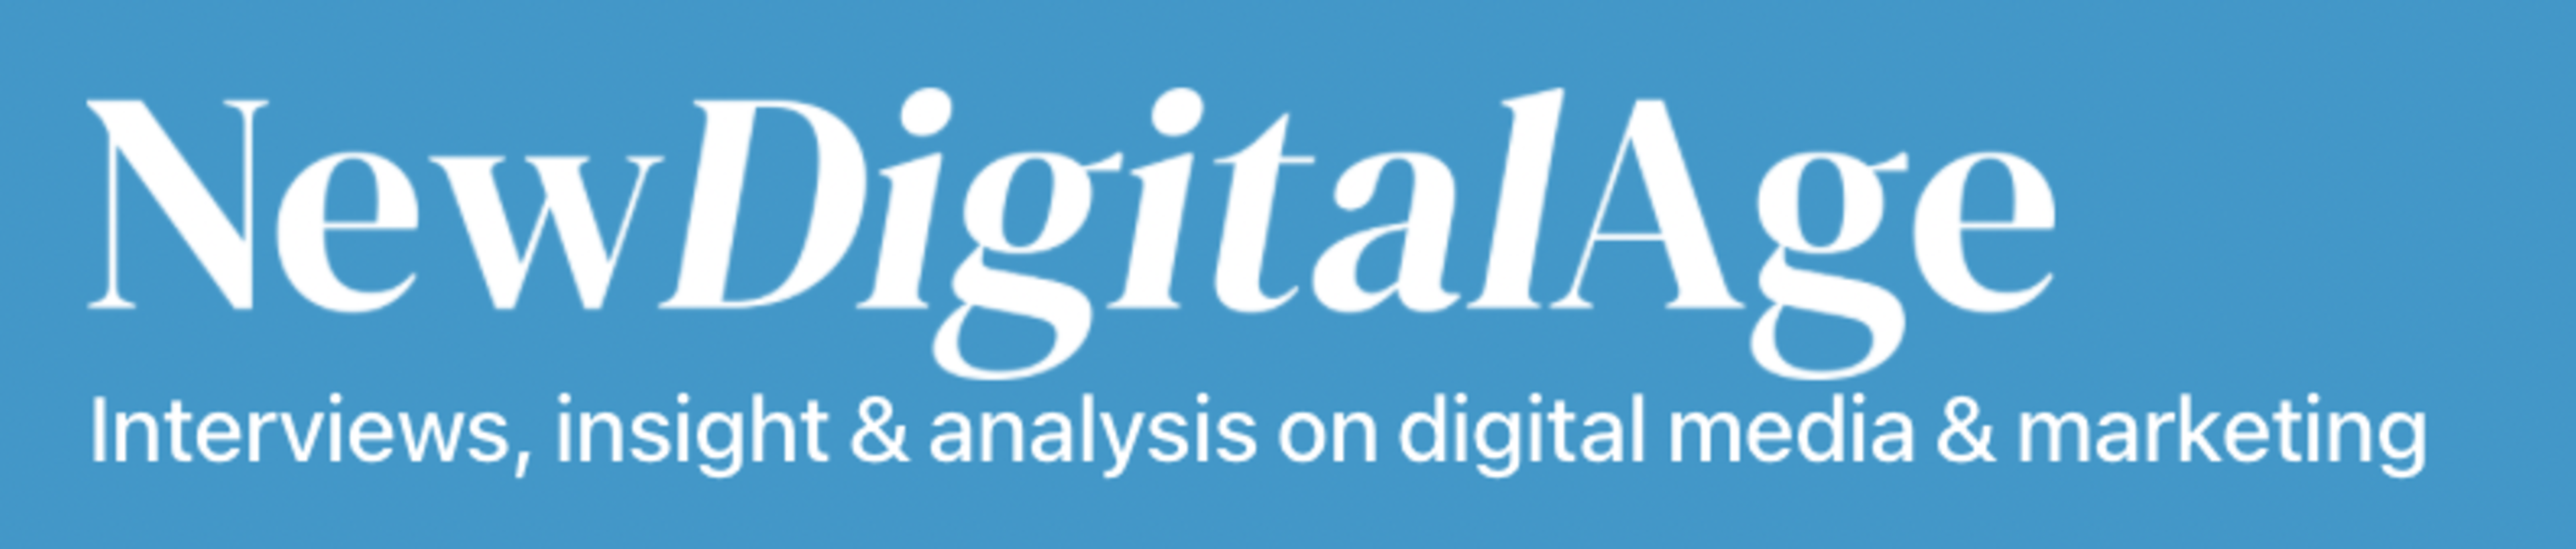 New Digital Age logo